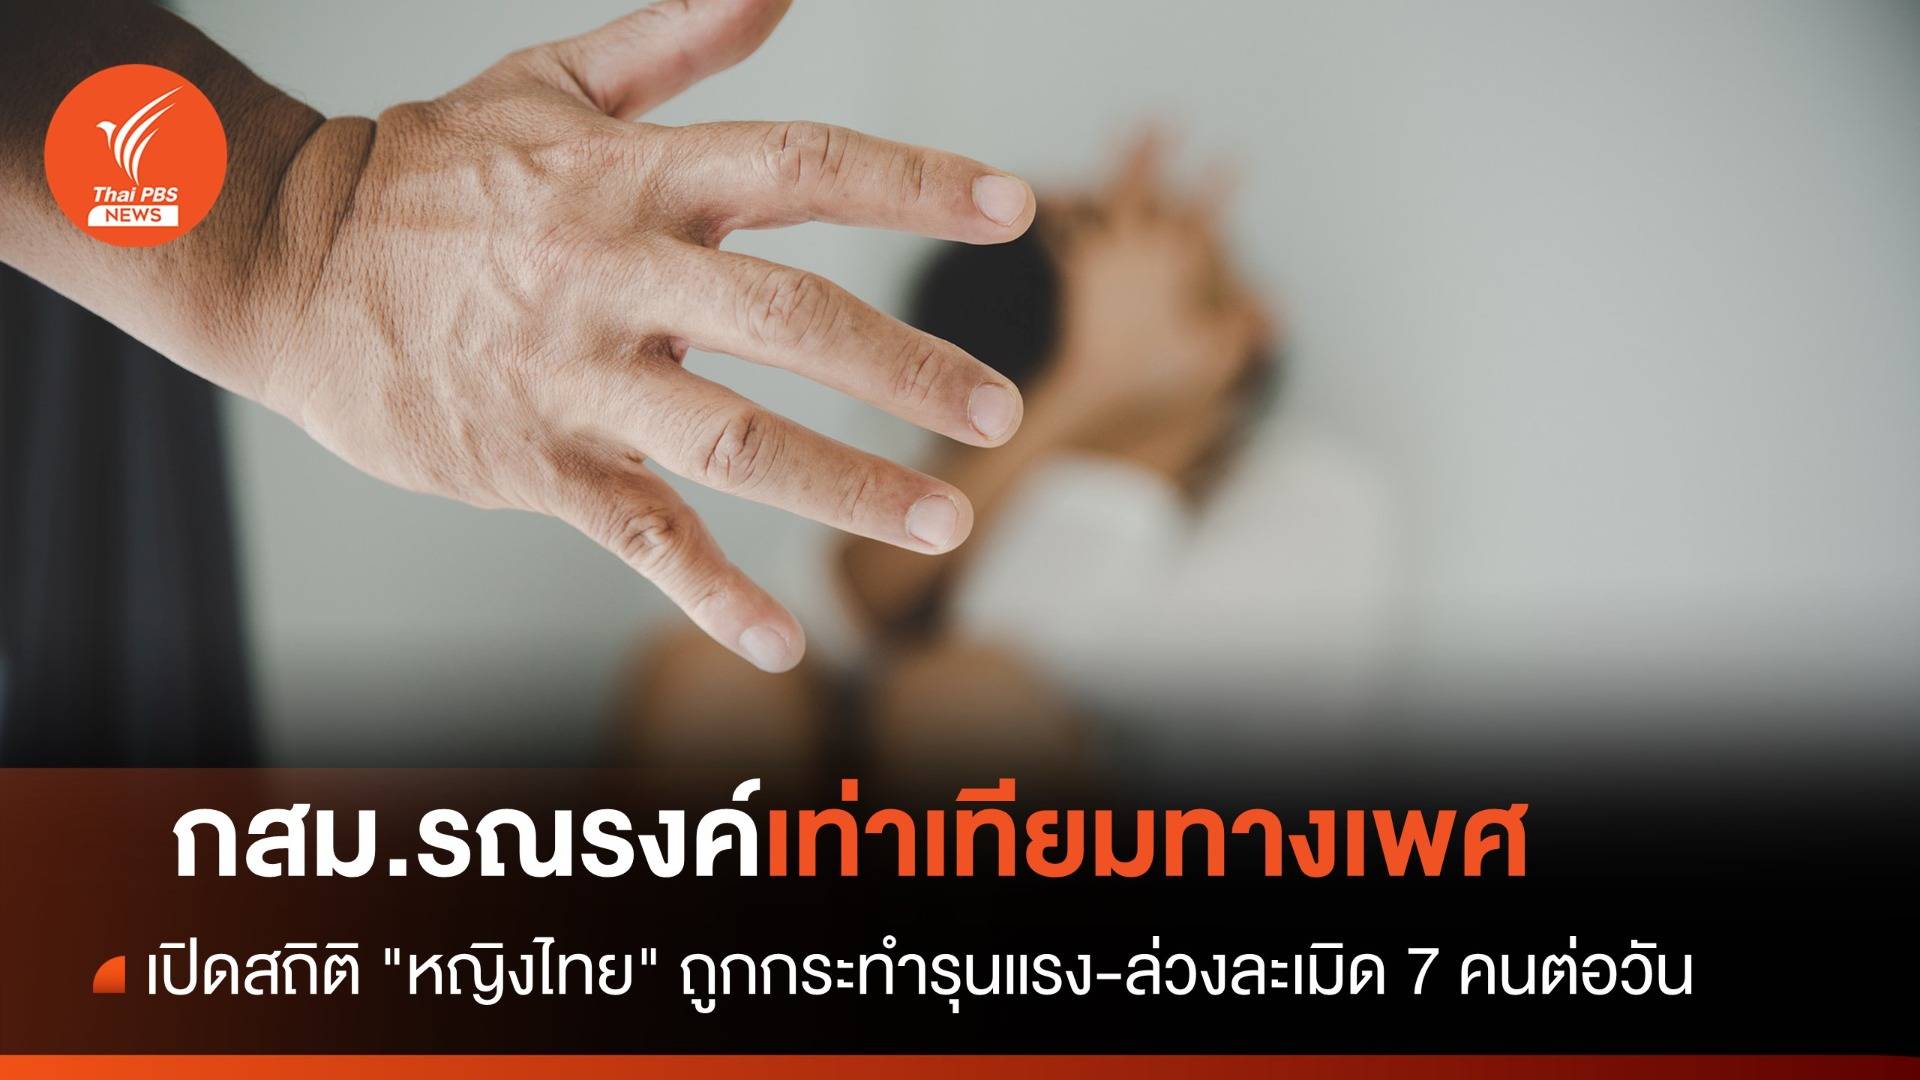 เปิดสถิติ "หญิงไทย" ถูกกระทำรุนแรง-ล่วงละเมิด 7 คนต่อวัน